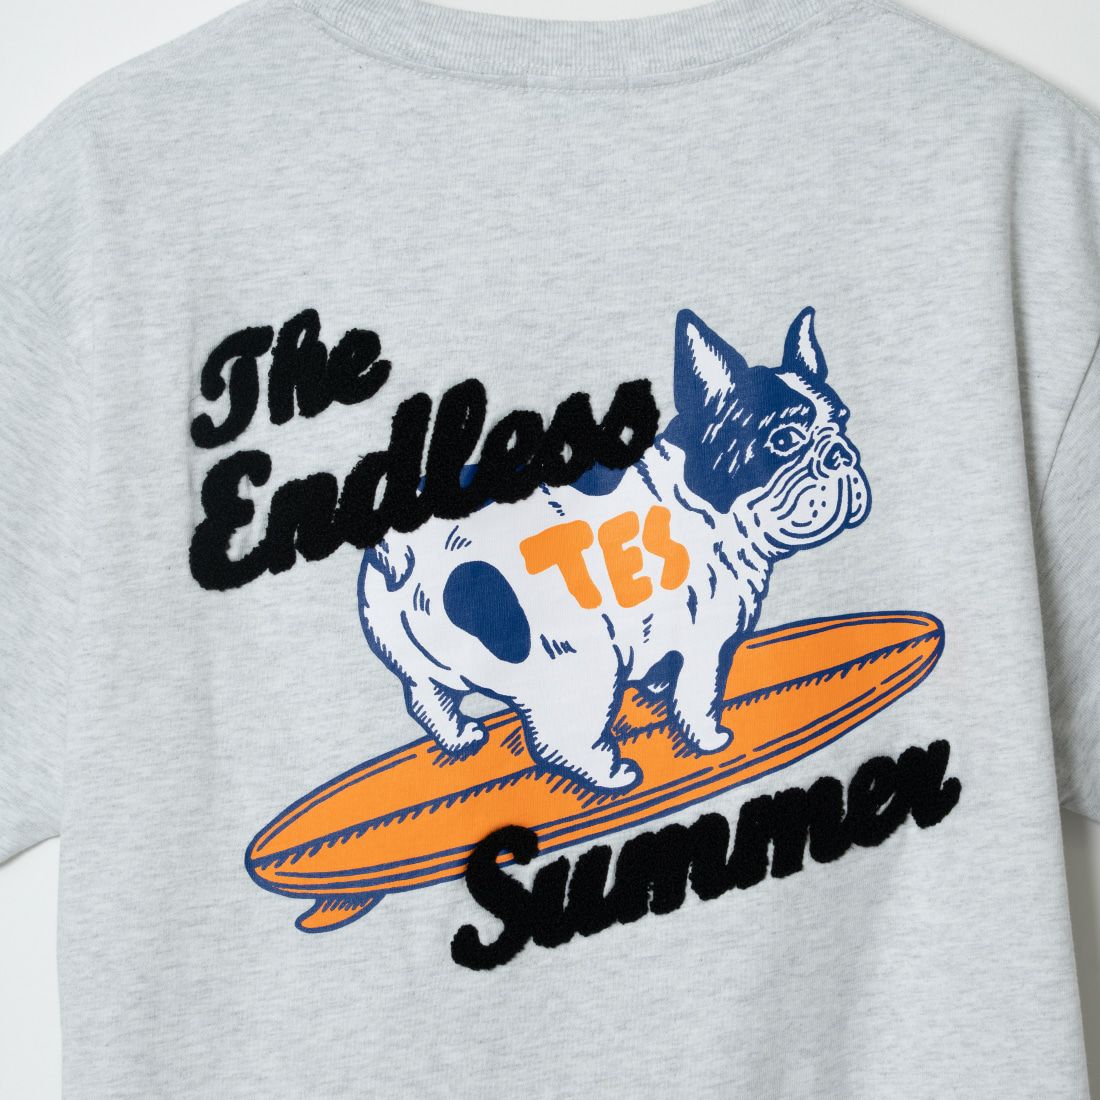 The Endless Summer [エンドレスサマー] 別注 サーフBUHI サガラ刺繍ロゴバックプリントTシャツ [C-24574500-JF] 03 GRAY